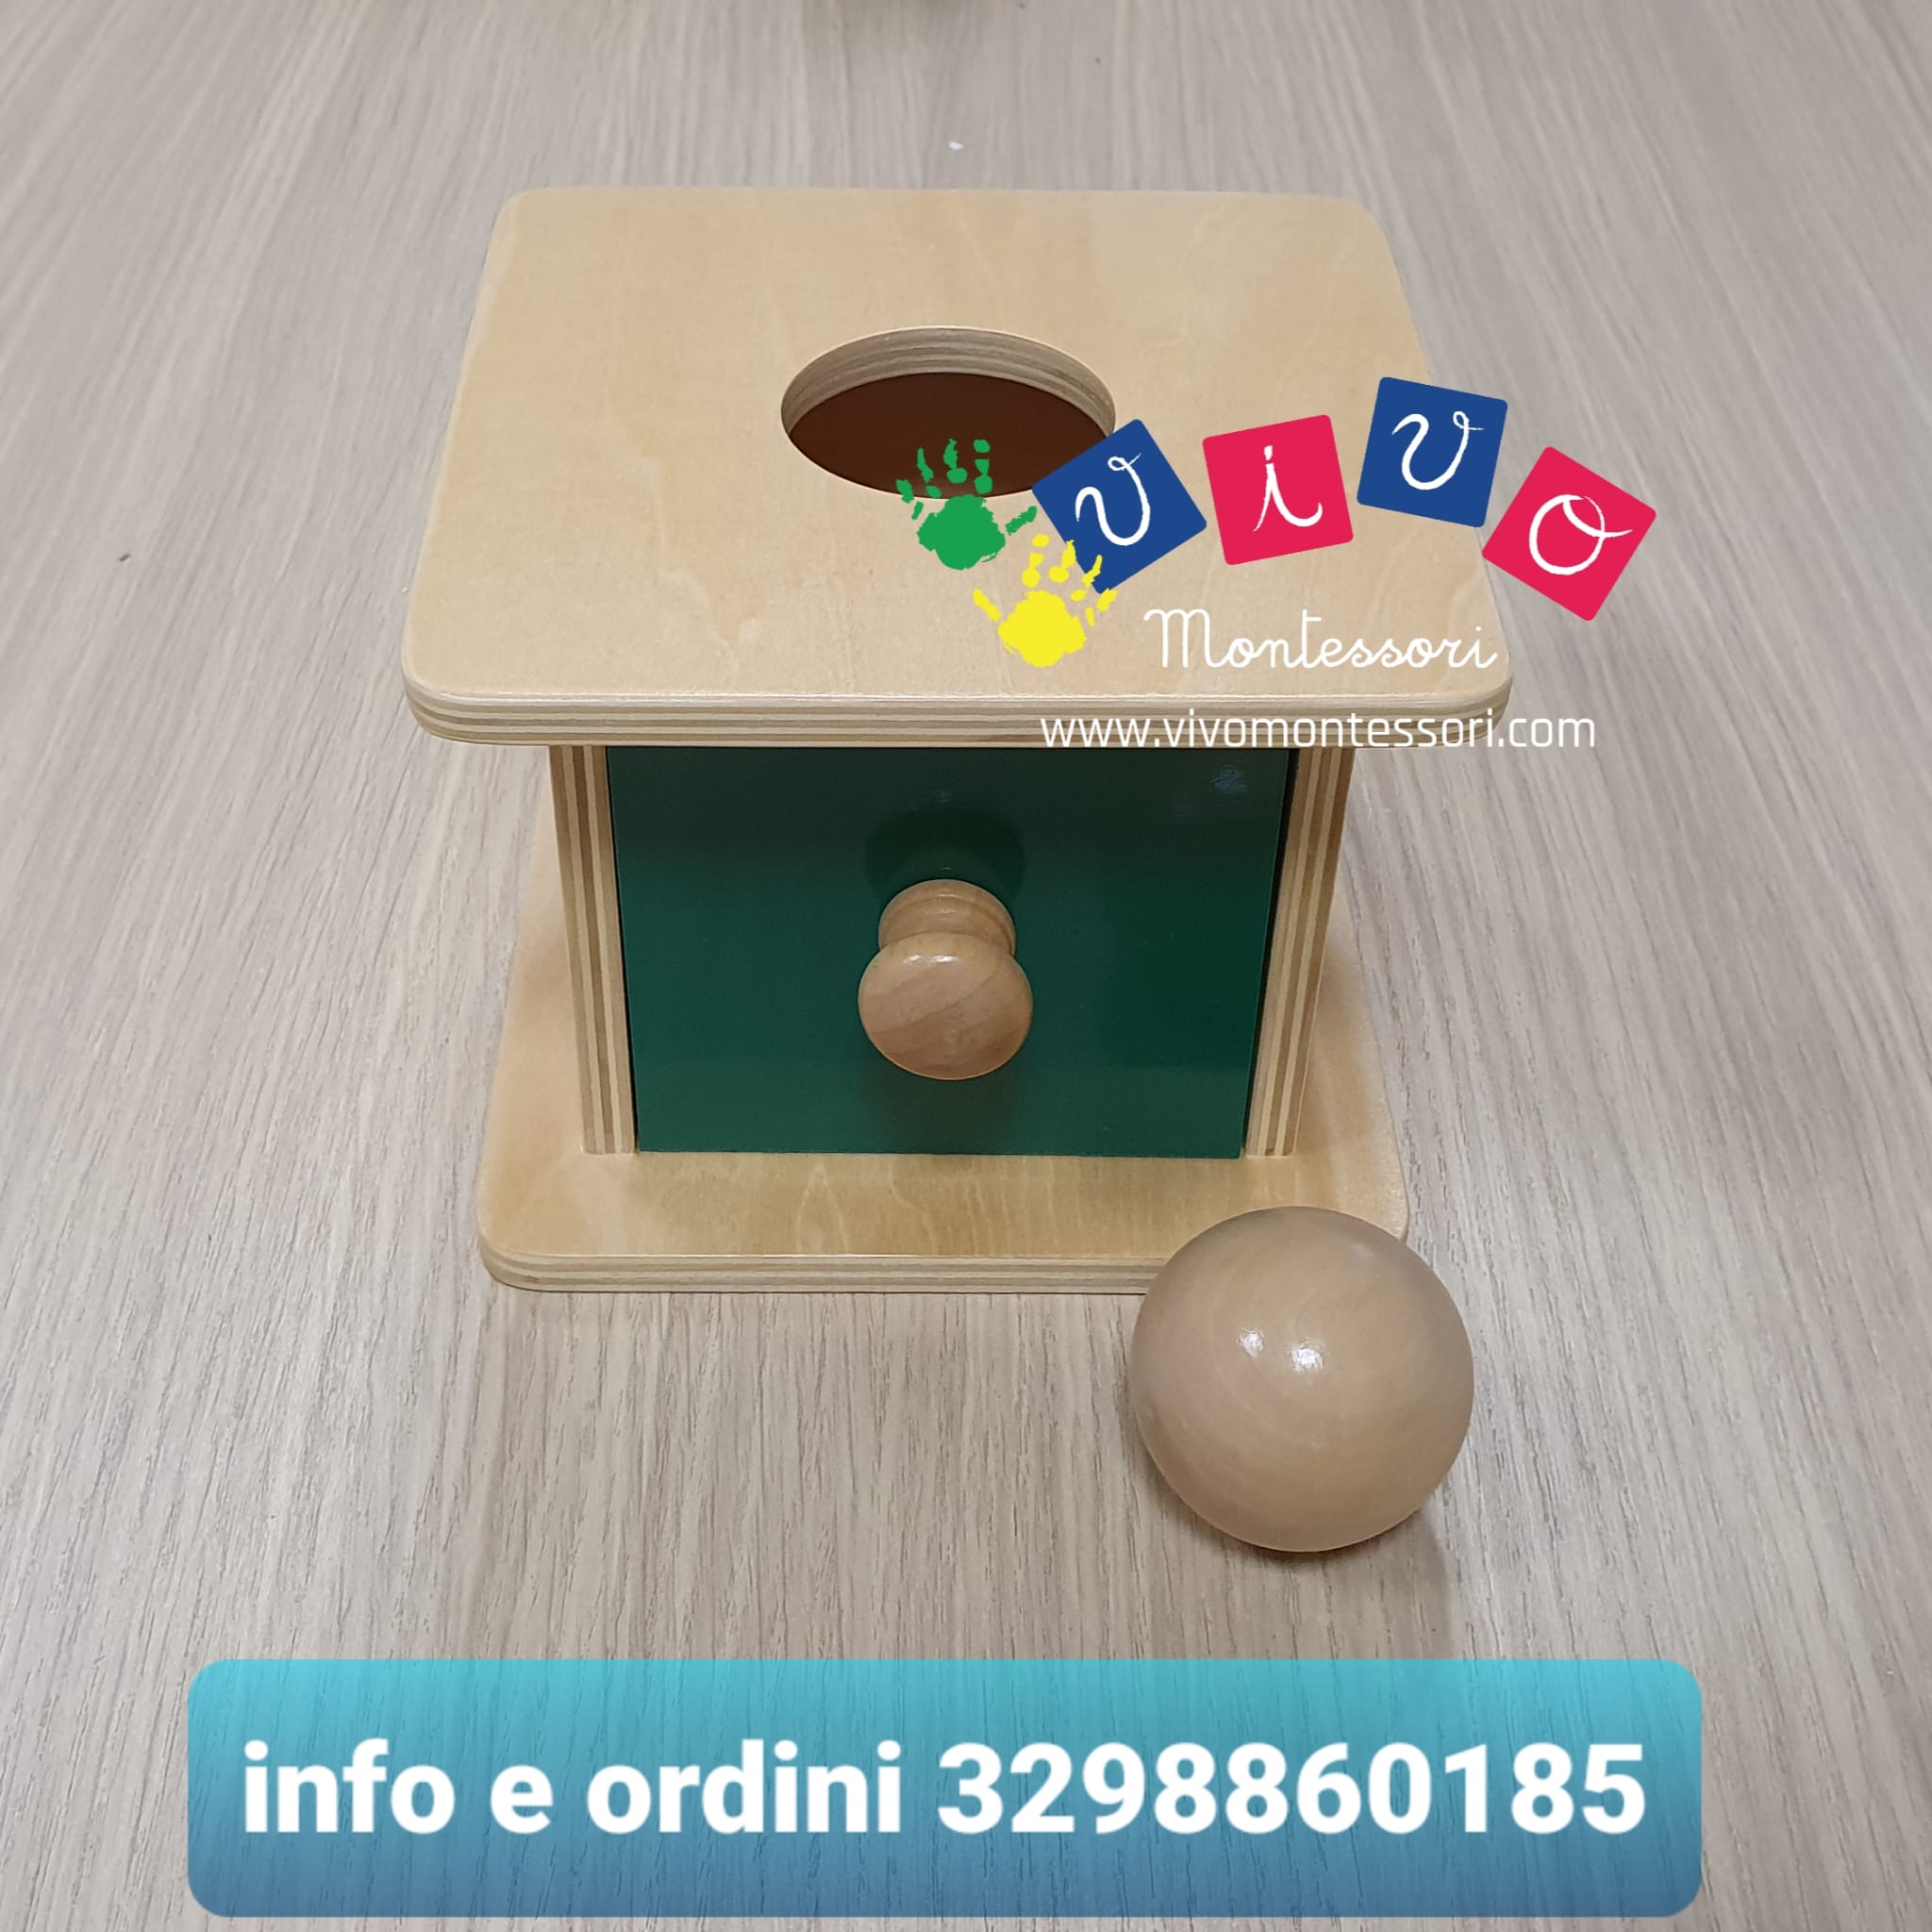 Scatola imbucare Vivo Montessori con cassetto e palla in legno